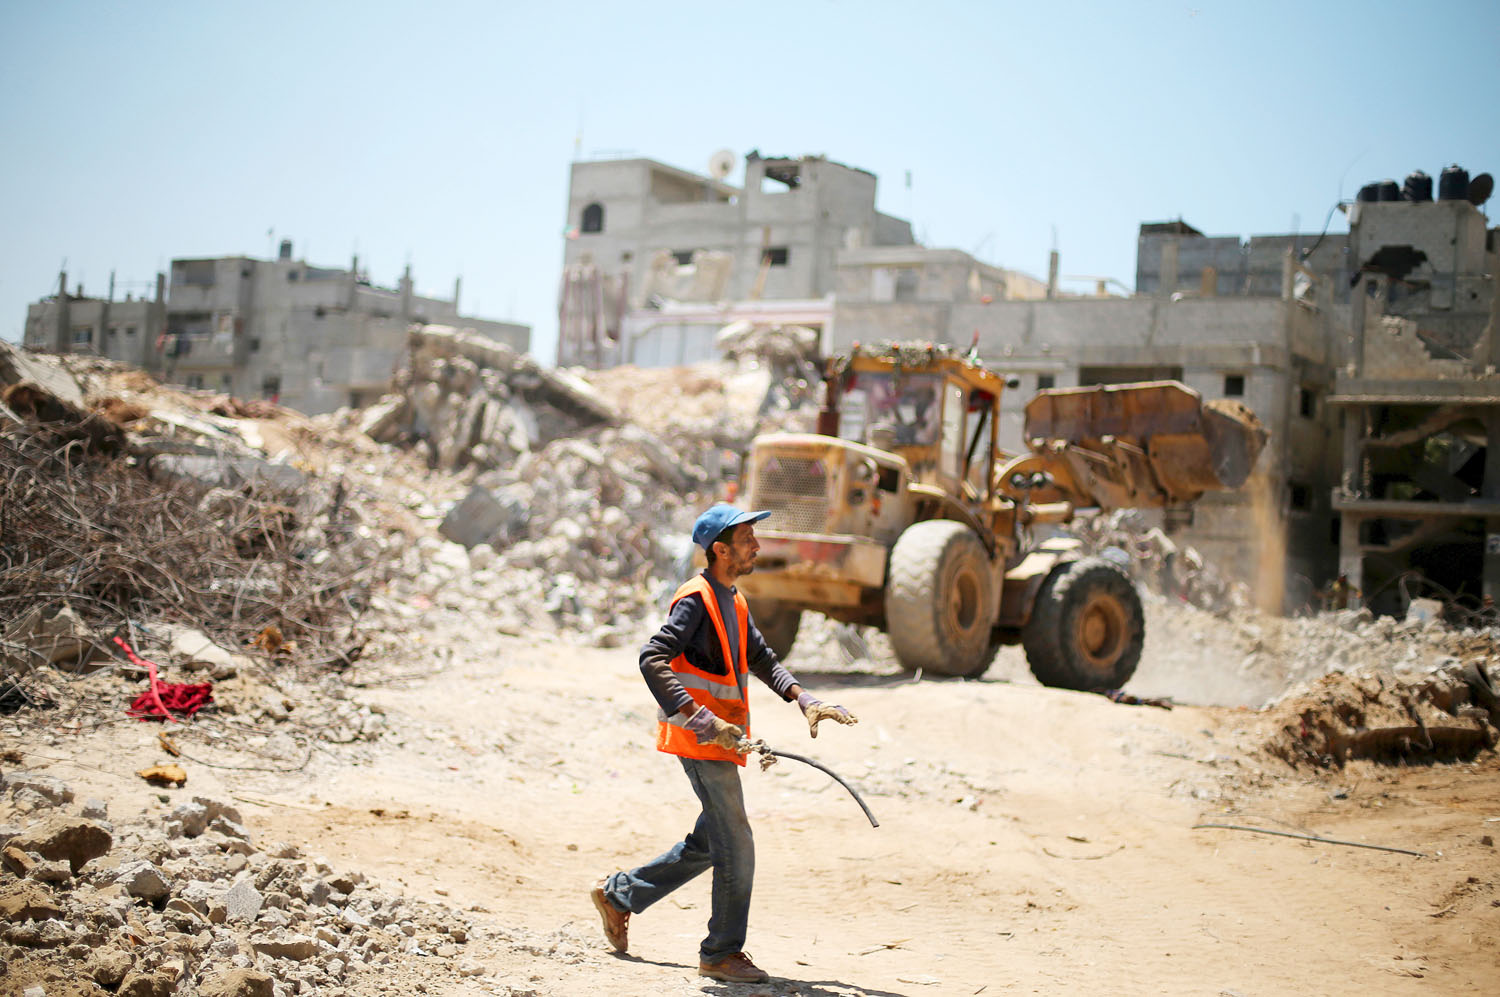 Gáza egy része még mindig romokban hever a tavaly nyári háború nyomán. Az önálló palesztin állam szép terv marad